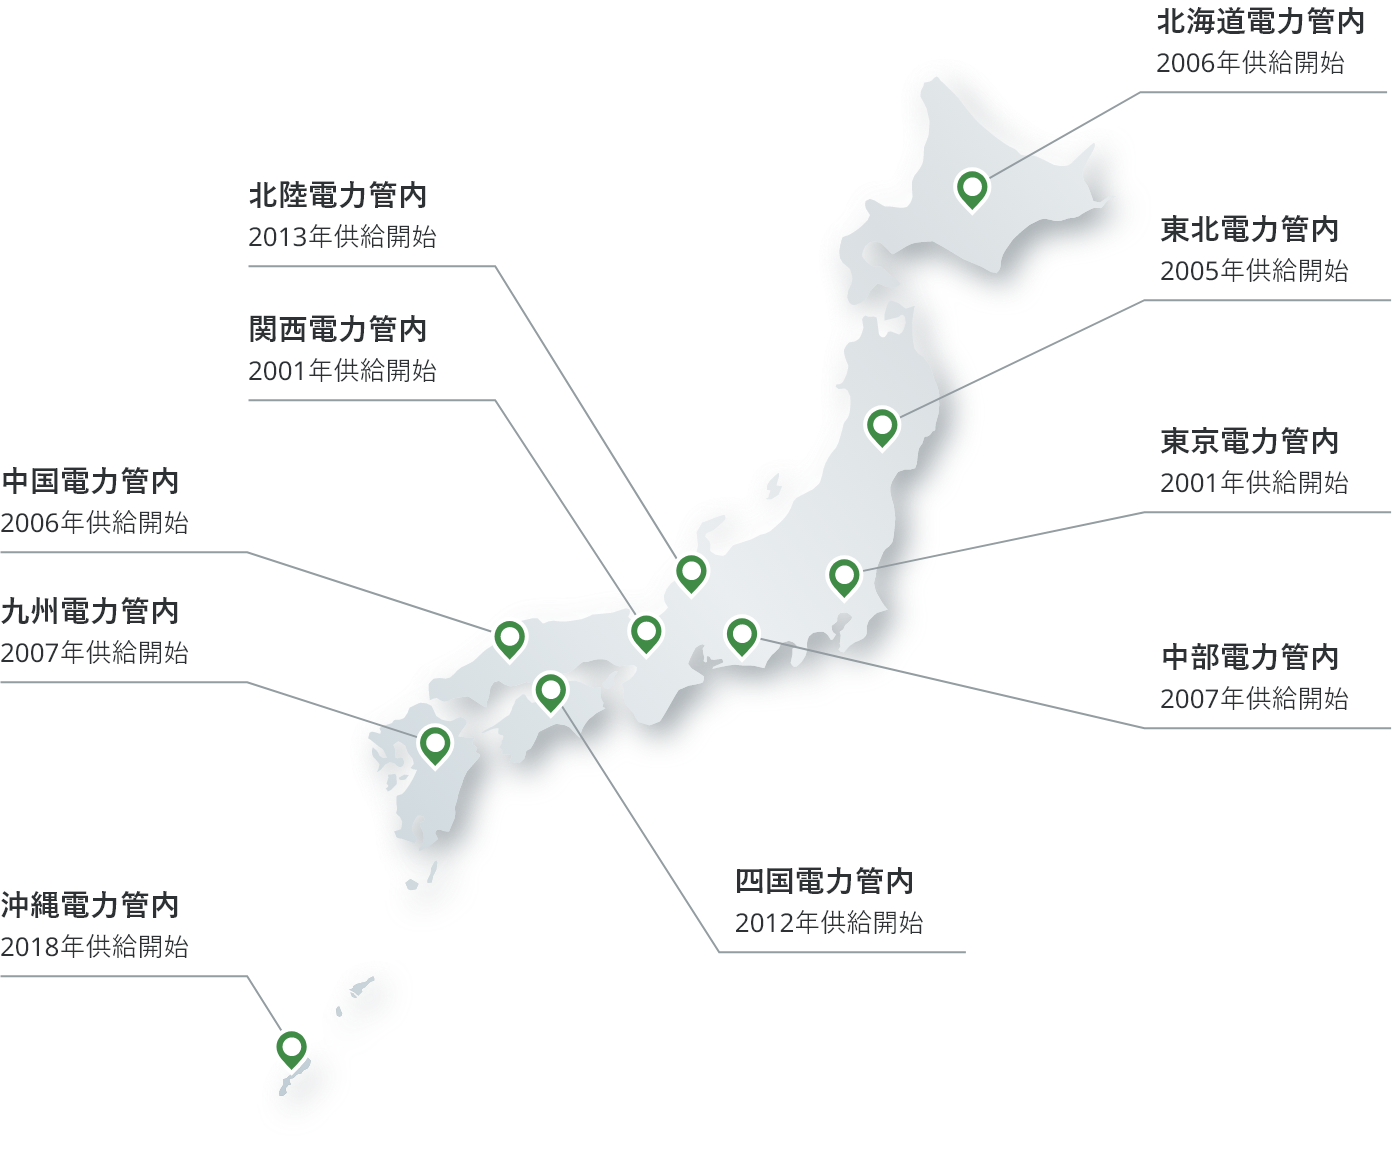 北海道電力管内 2006年供給開始、東北電力管内 2005年供給開始、東京電力管内 2001年供給開始、中部電力管内 2007年供給開始、北陸電力管内 2013年供給開始、関西電力管内 2001年供給開始、中国電力管内 2006年供給開始、九州電力管内 2007年供給開始、沖縄電力管内 2018年供給開始